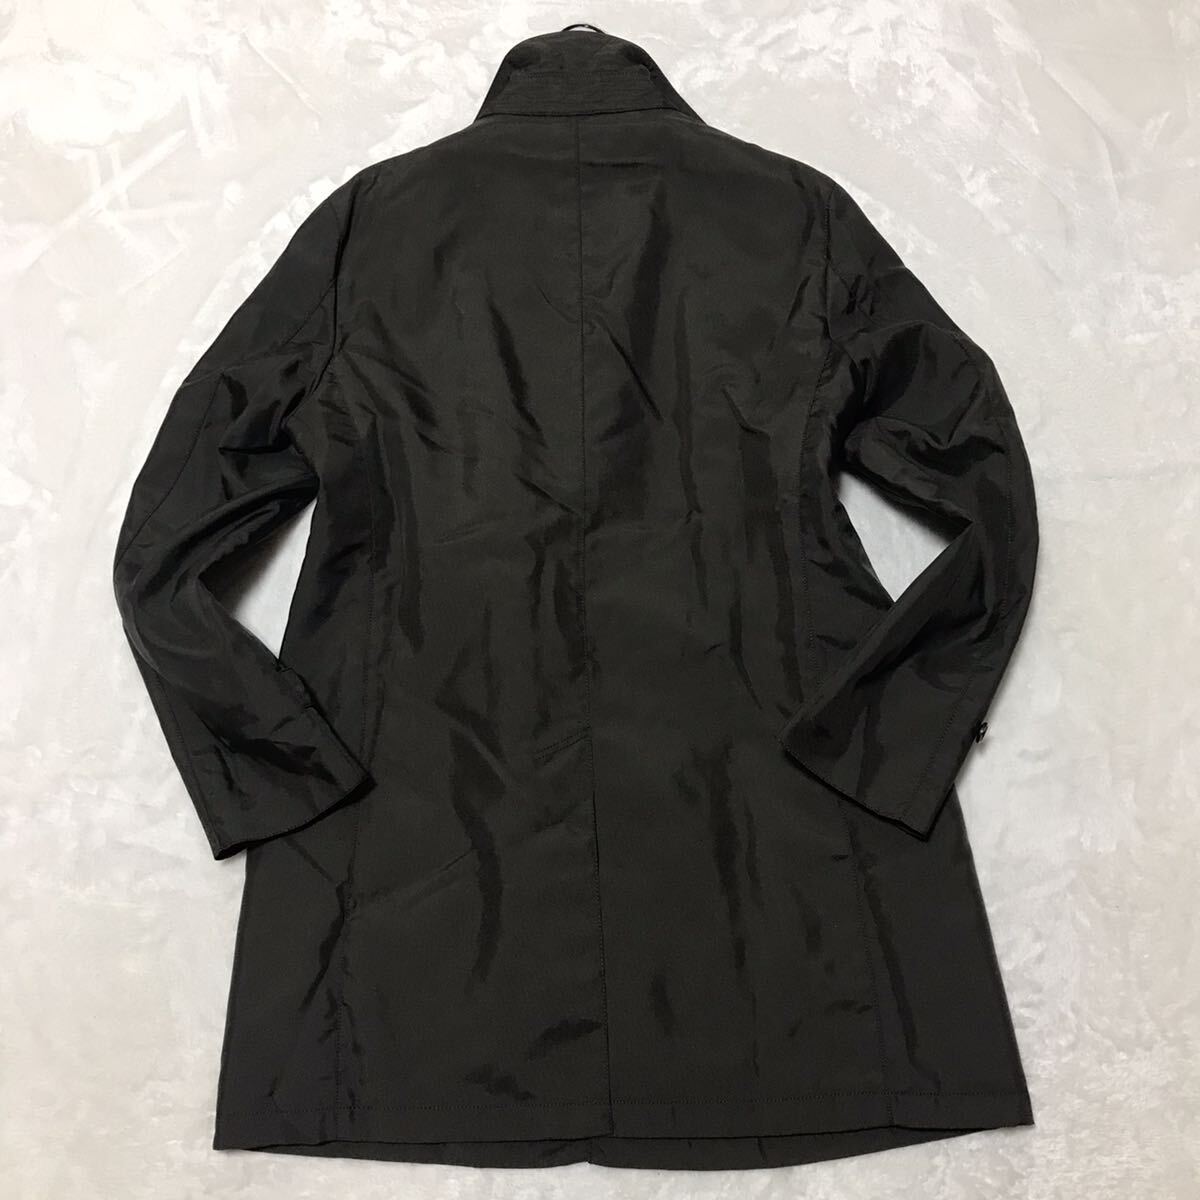  Macintosh firosofi-MACKINTOSH пальто с отложным воротником с хлопком стеганое полотно подкладка 42 Brown мужской внешний бизнес L